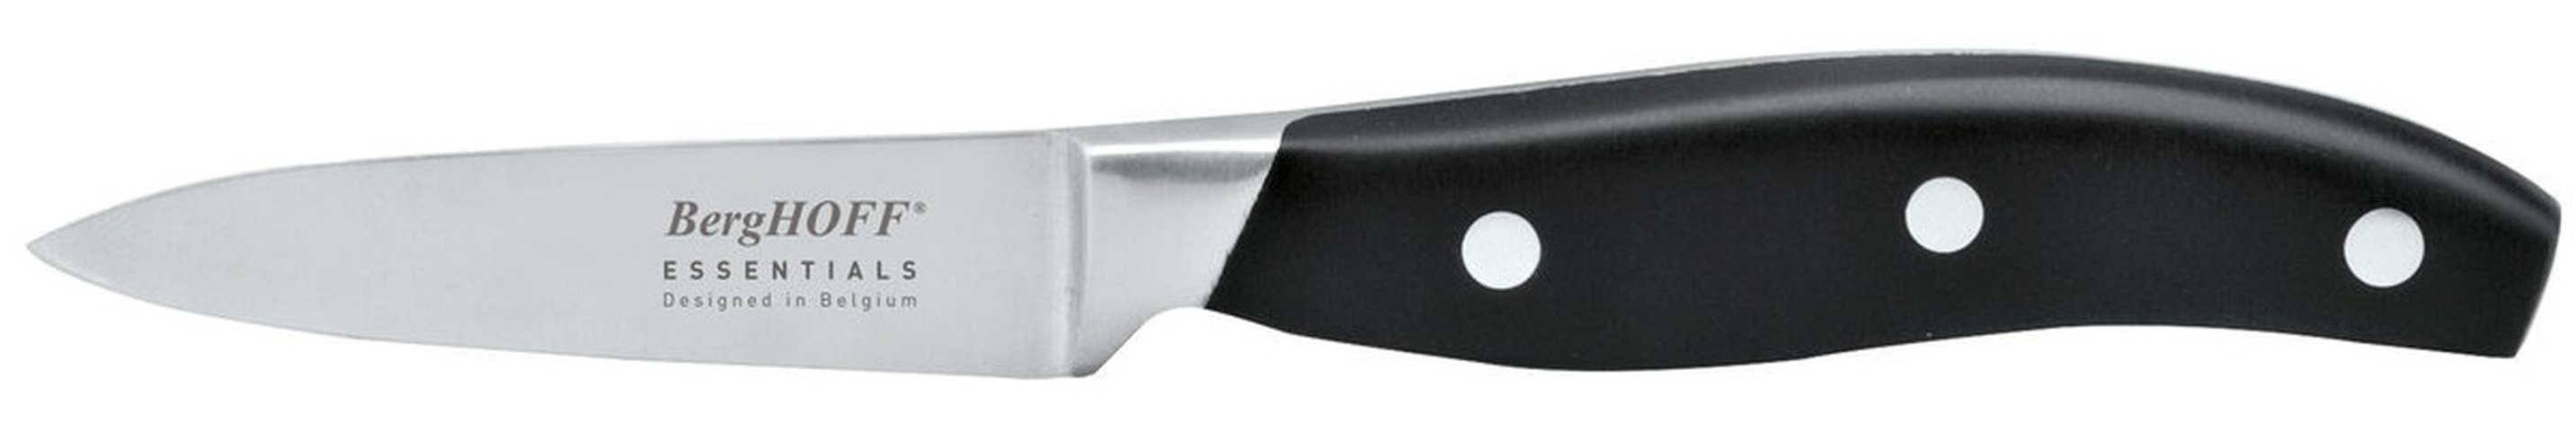 Набор ножей 15 предметов BERGHOFF (1307144). BERGHOFF Essentials набор ножей 15 пр 1307144. BERGHOFF Essentials ножи. BERGHOFF Essentials сантоку.